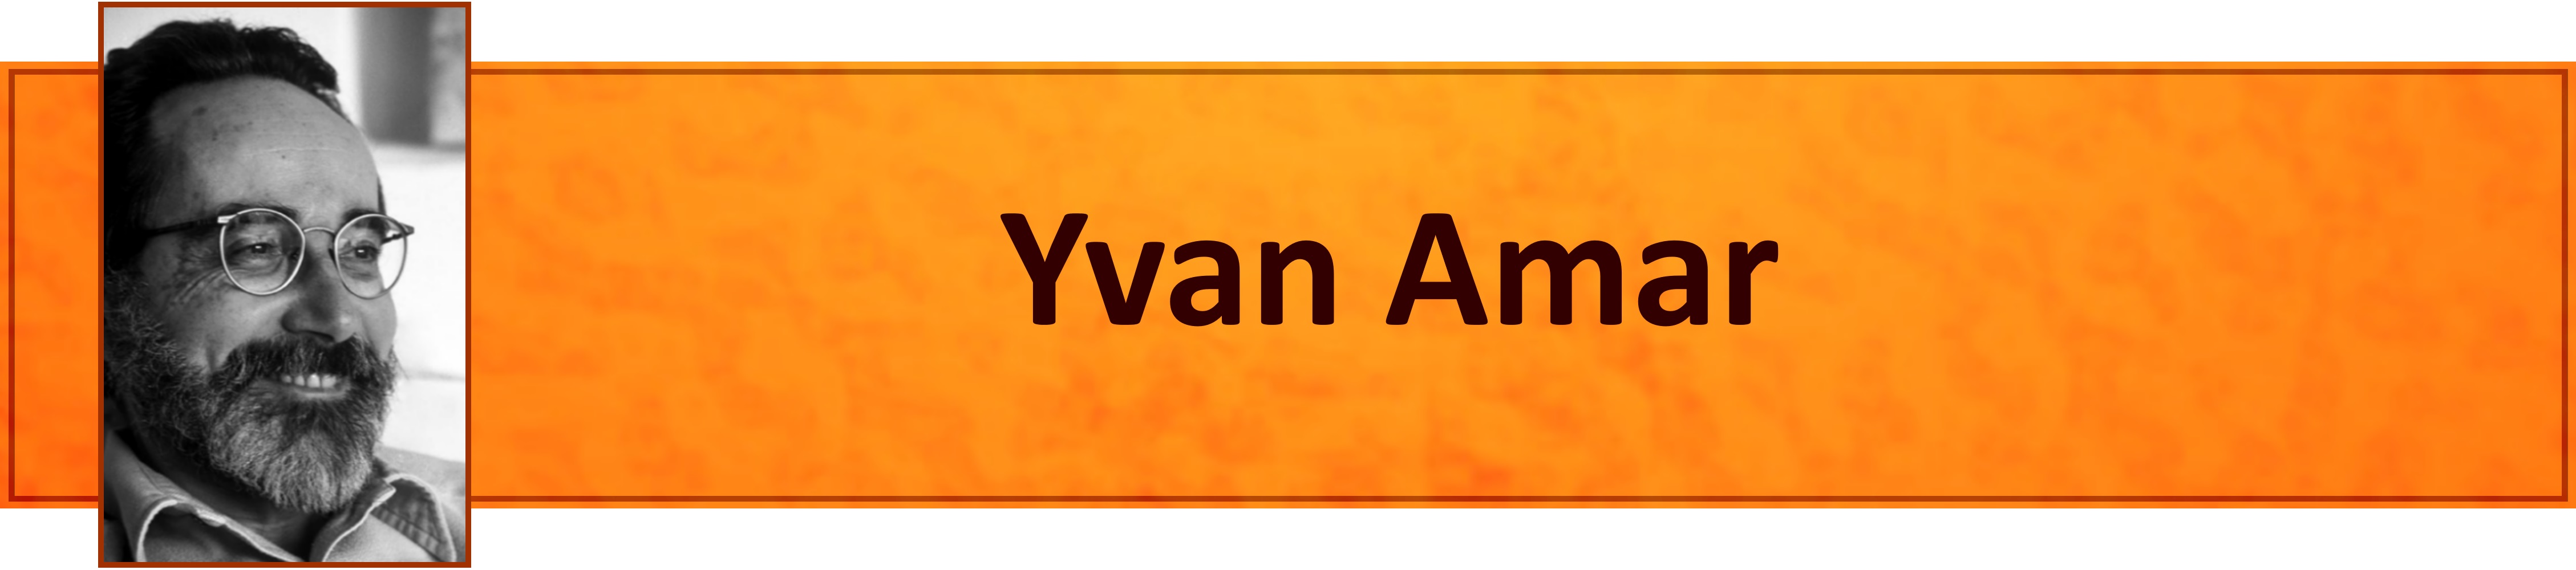 Yvan Amar